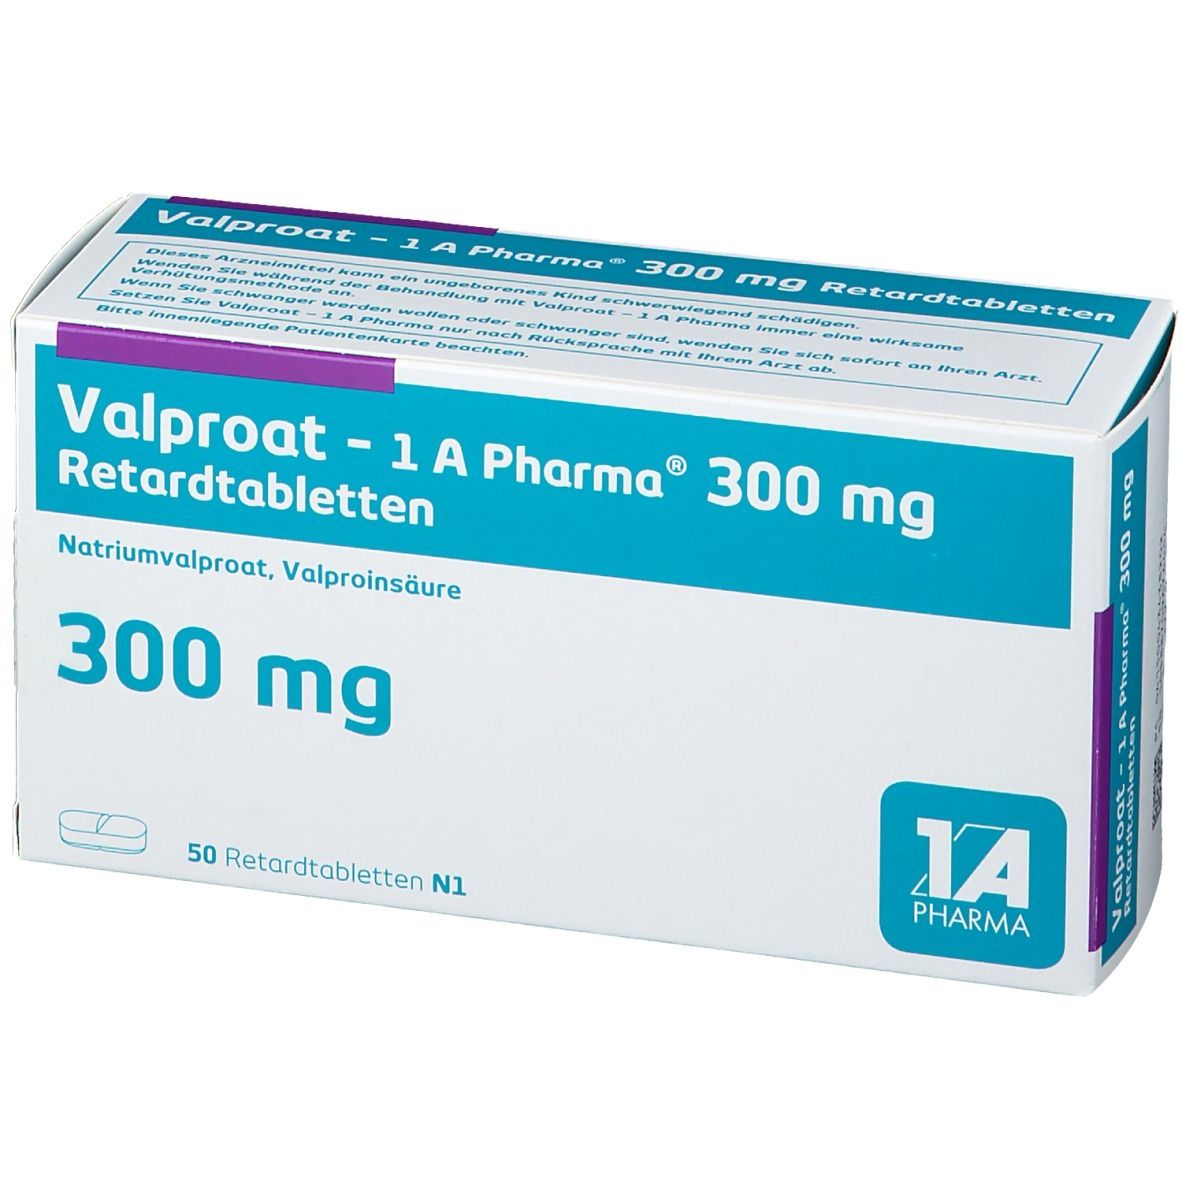 Valproat - 1 A Pharma® 300 mg